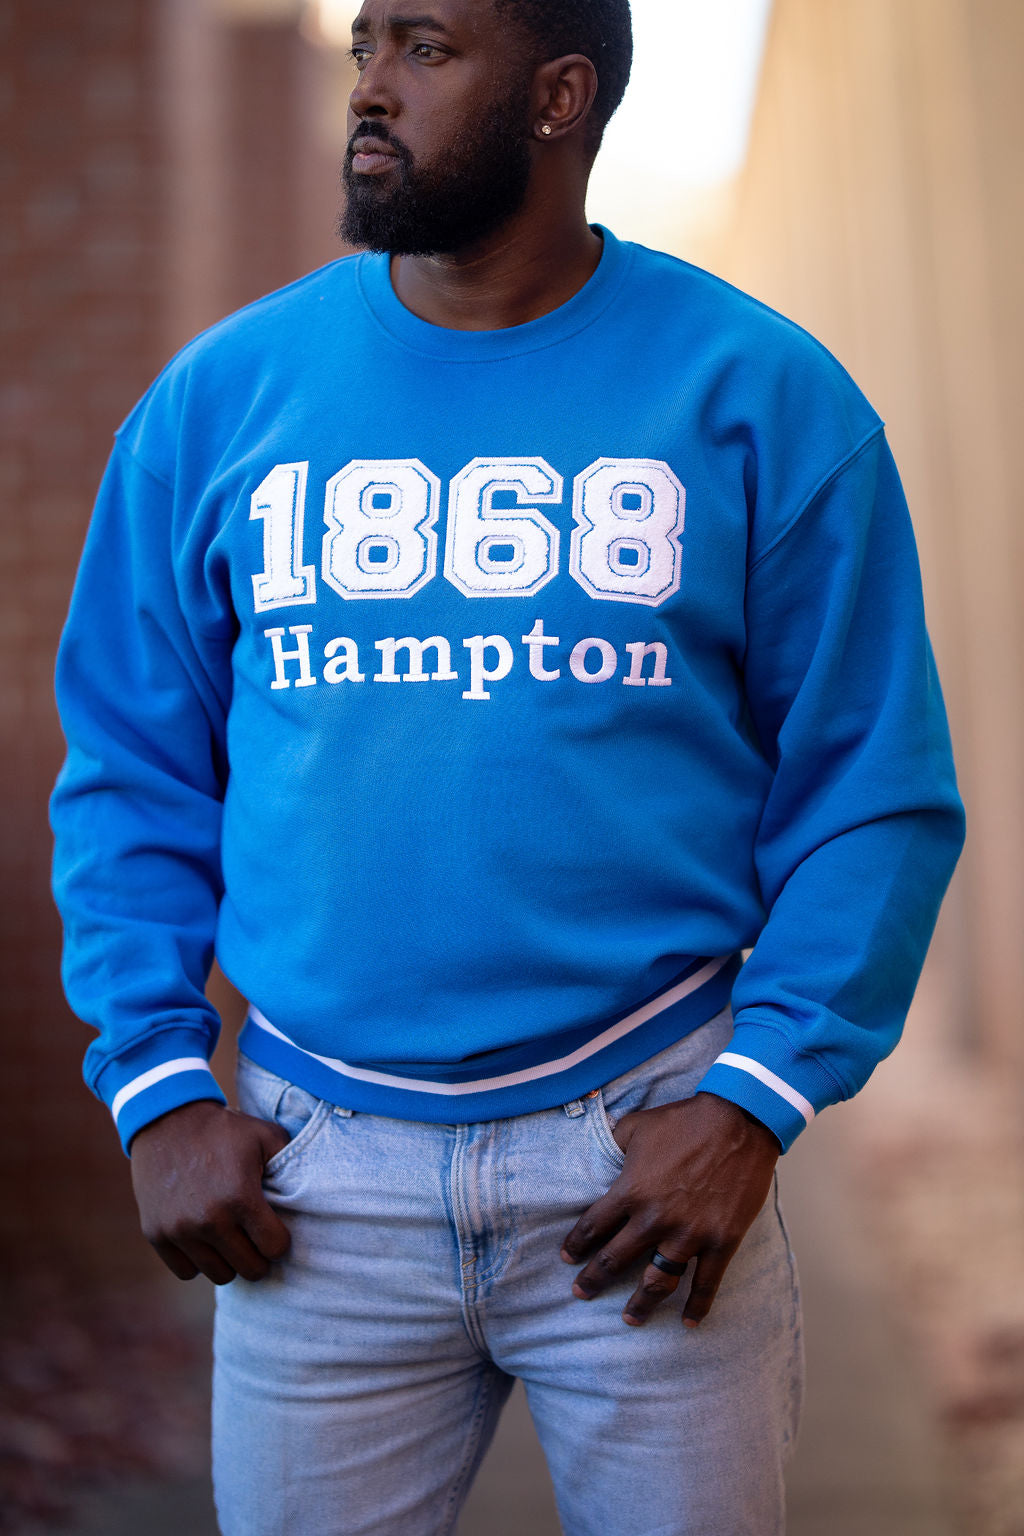 1868 Hampton University Sweatshirt